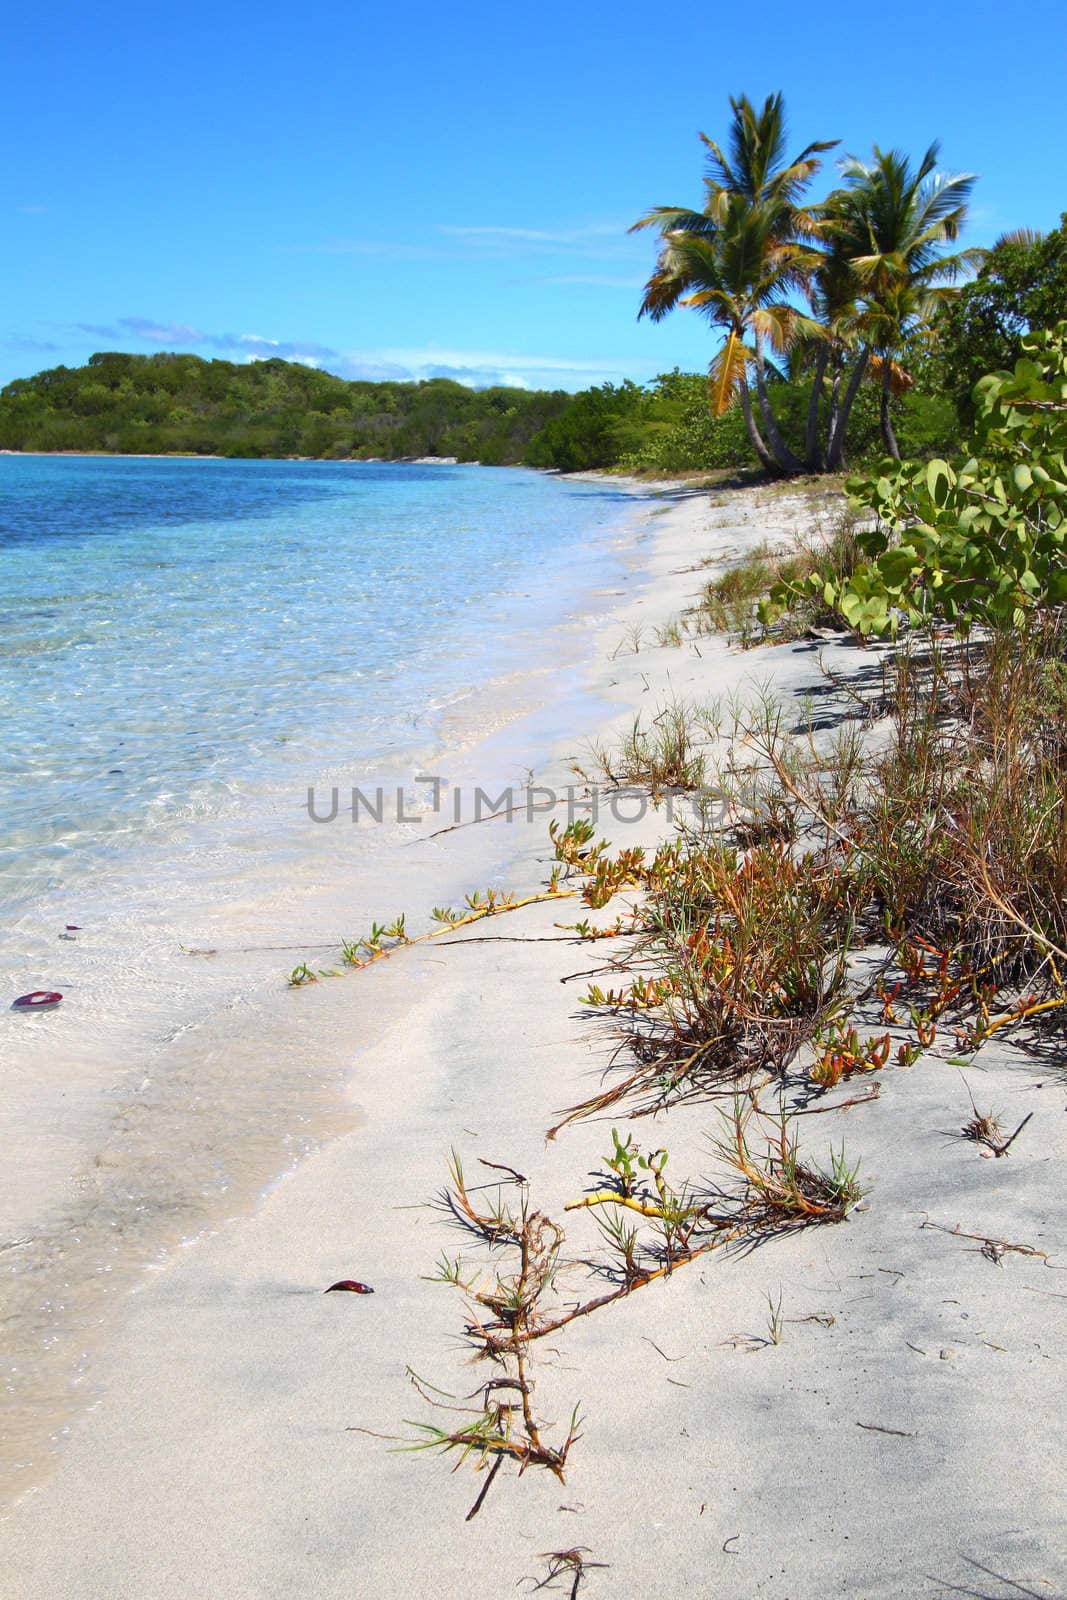 A beautiful beach in the British Virgin Islands.